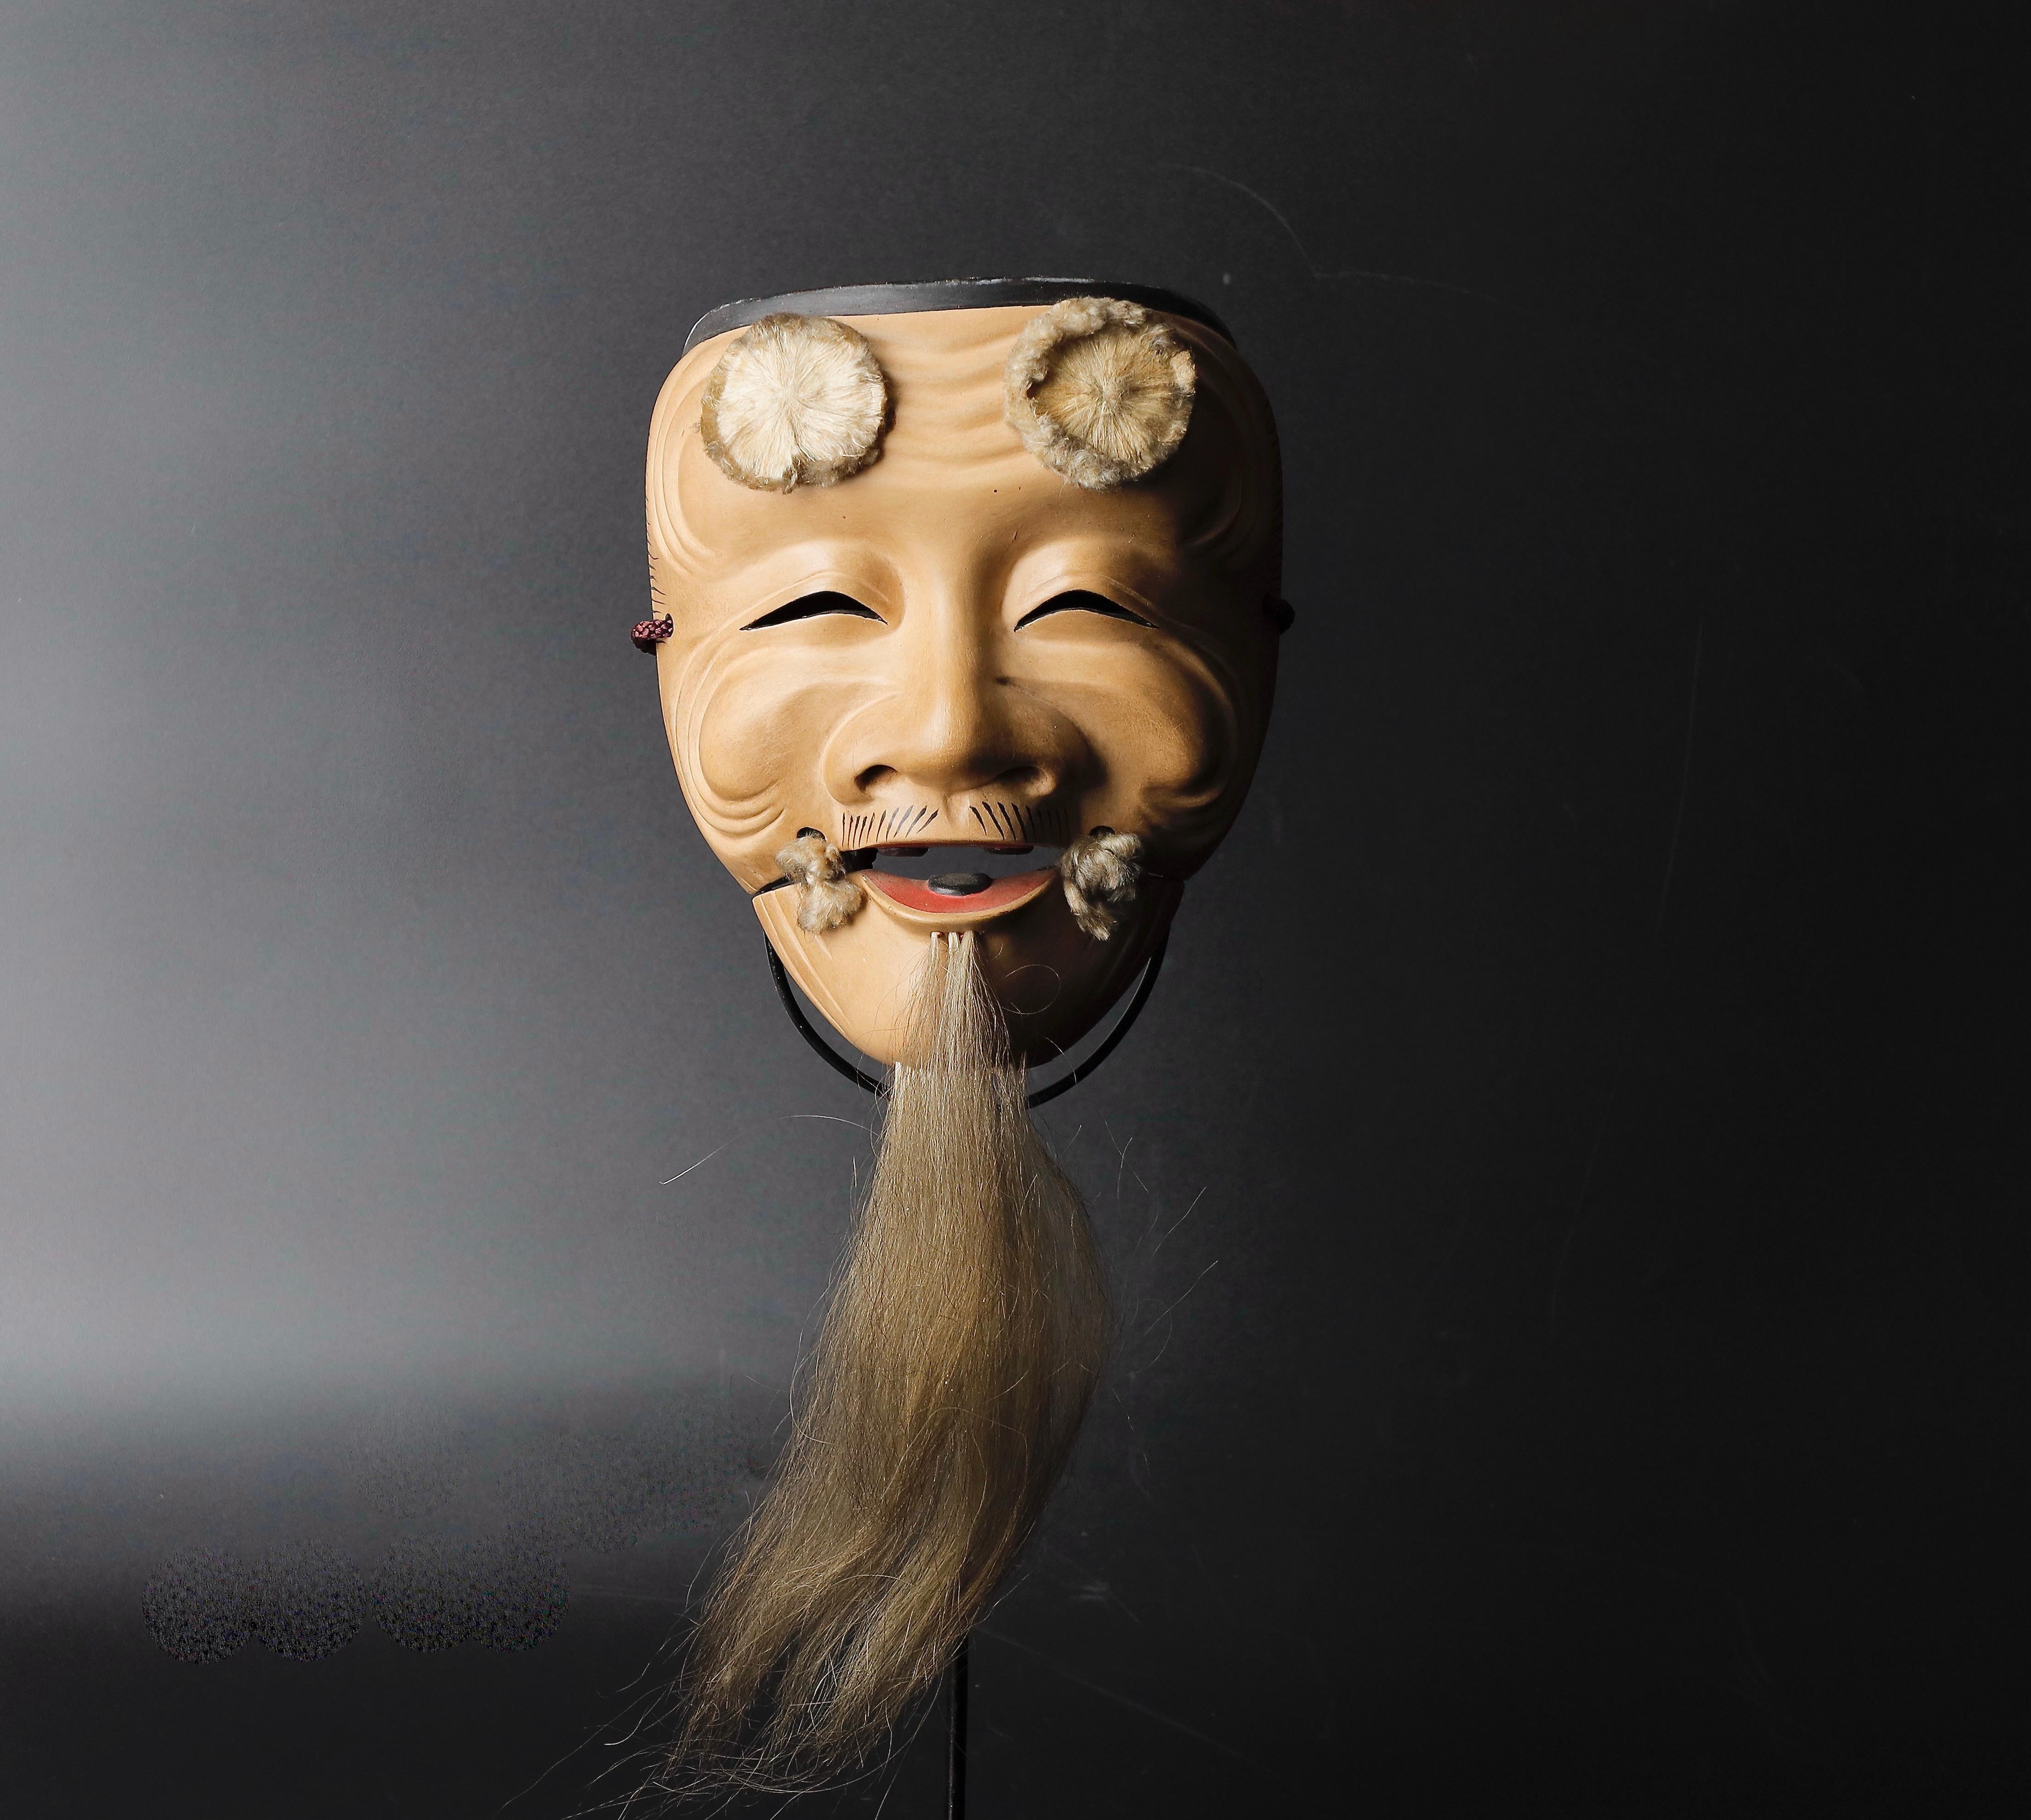 Gesungen  Okina Noh Maske alter Mann mit langem weißen Bart, der Weisheit ausdrückt
Mitte des 20. Jahrhunderts  
Größe: 15 x 19 x8 cm    ( 6x 7,5 x 3 Zoll )   
Gewicht:  230g  ( 0.5 lb )    
MATERIAL: Holz mit Gofun-Farbe
Kleiner Riss unter dem